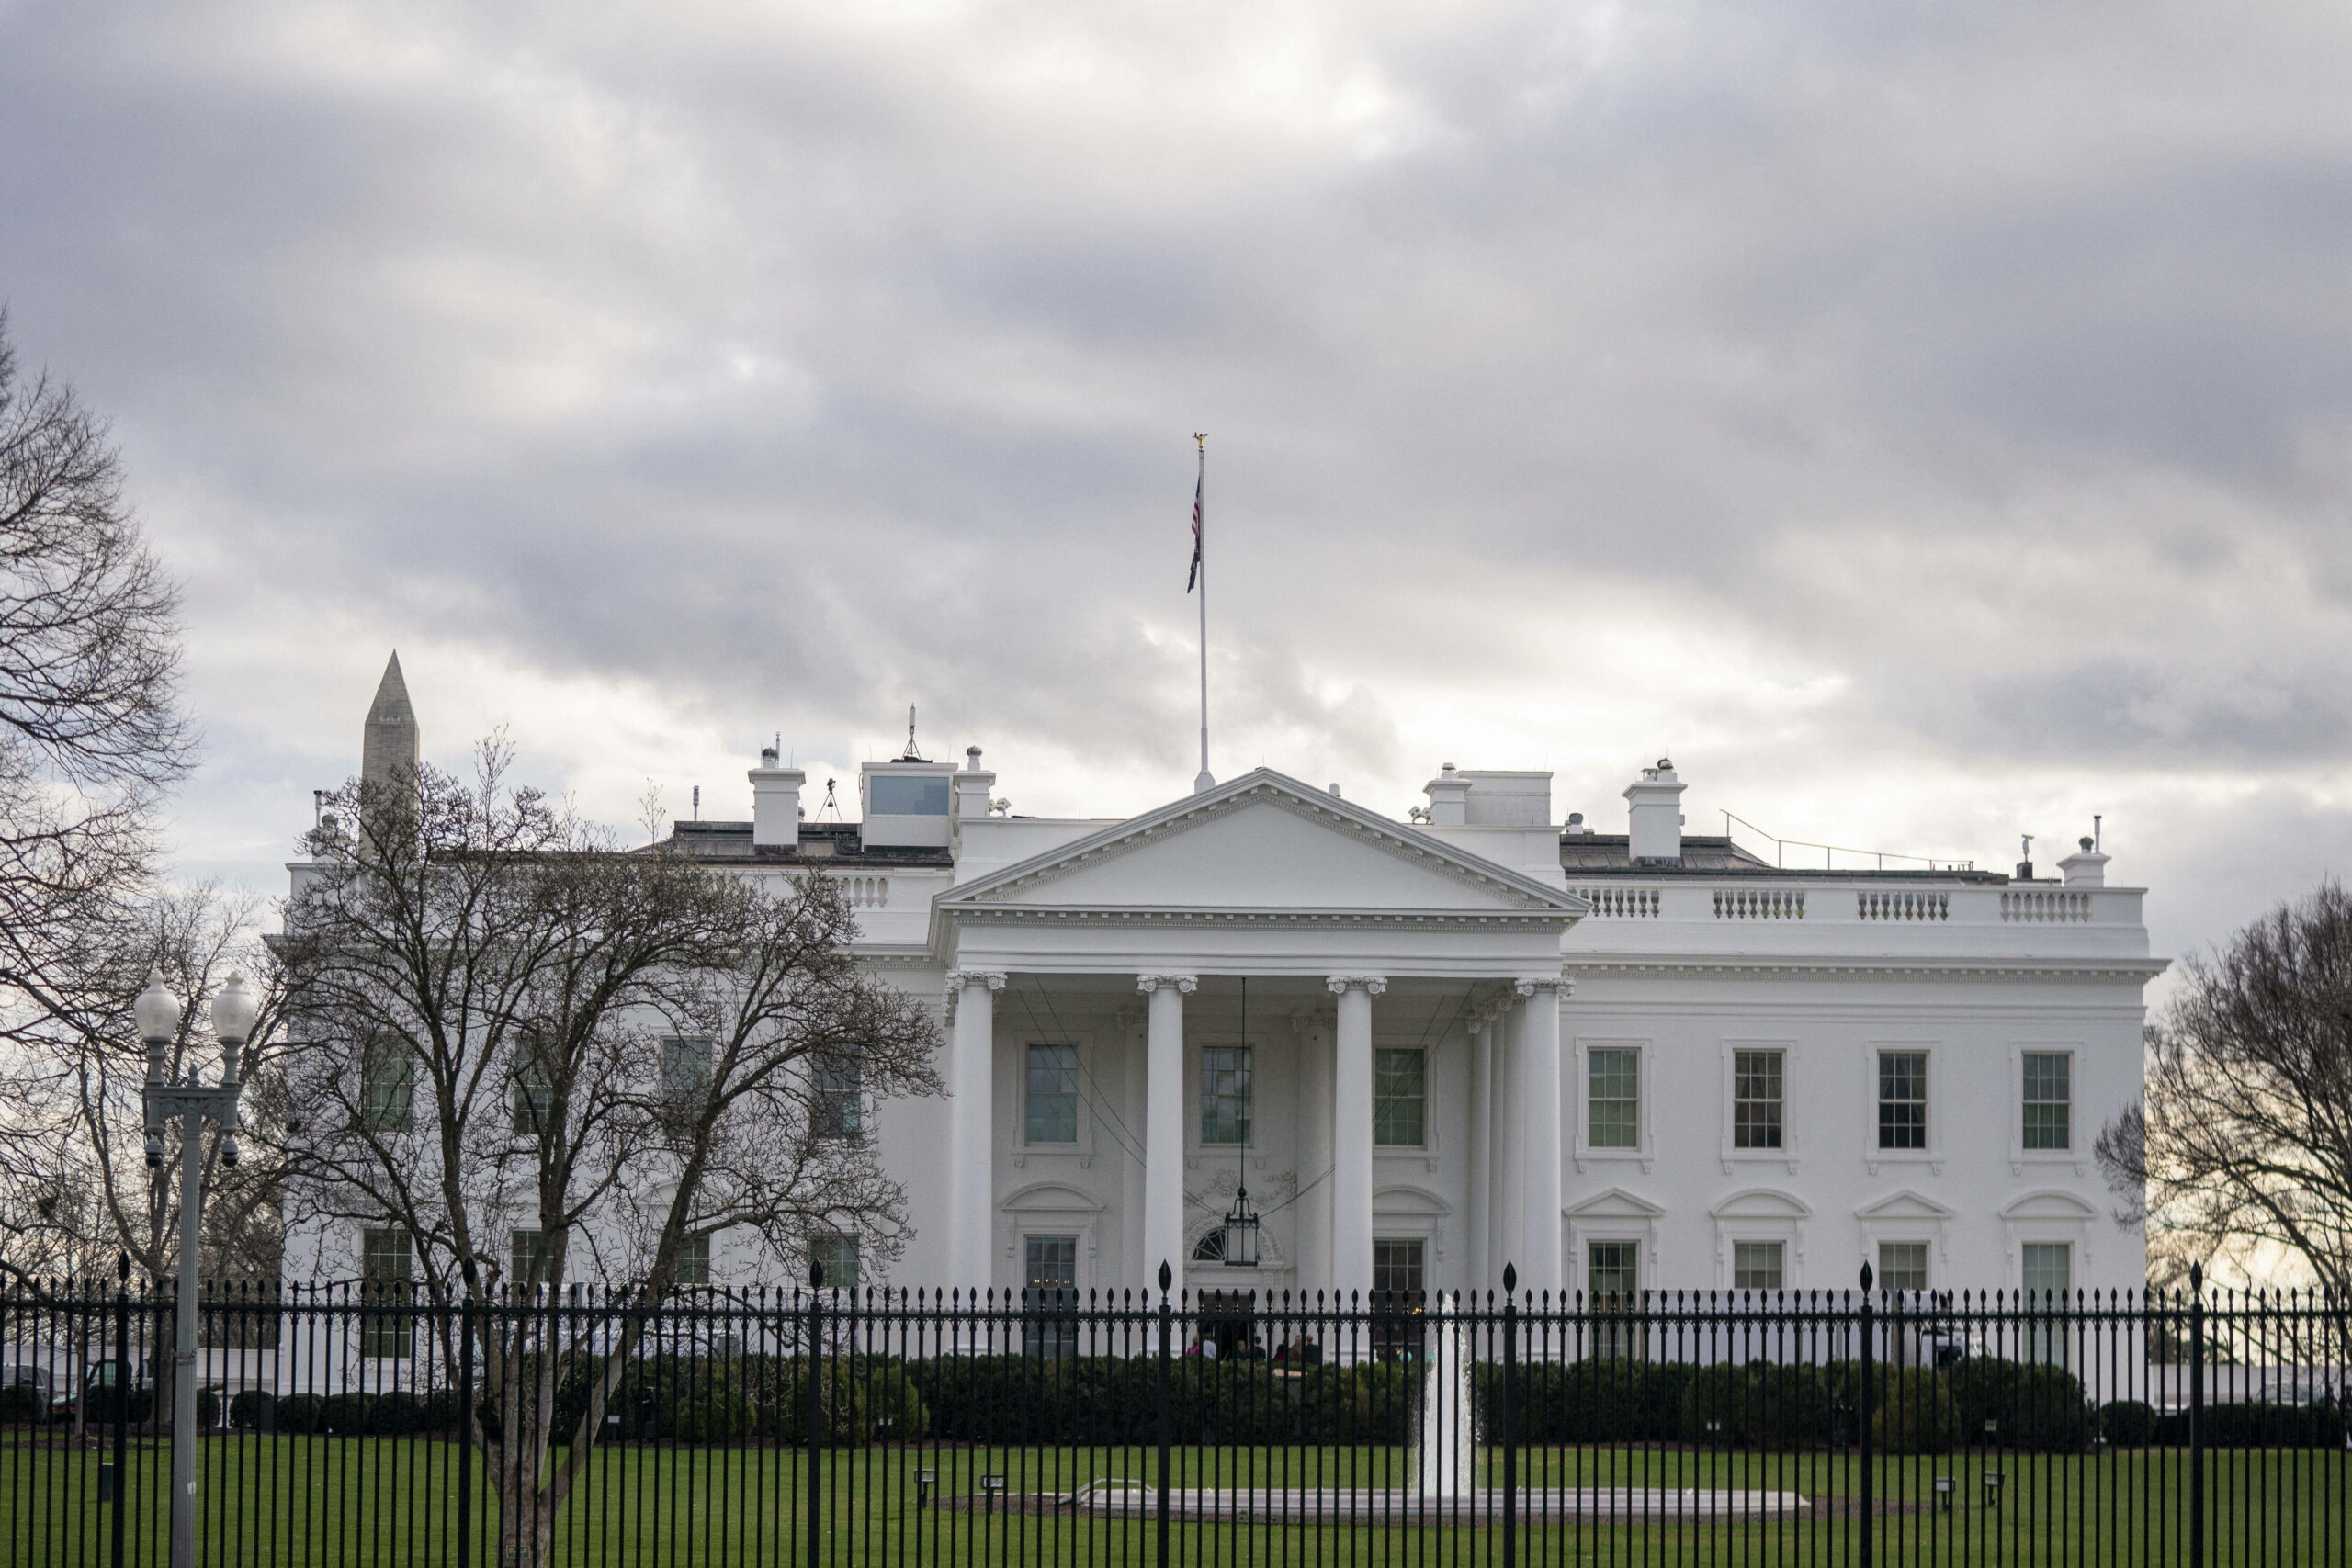 Das Weiße Haus in Washington, D.C. ist der Amtssitz des US-Präsidenten. Im Vordergrund steht ein Zaun. Der Himmel ist bewölkt. Die Bäume sind winterlich kahl. (Symbolbild)